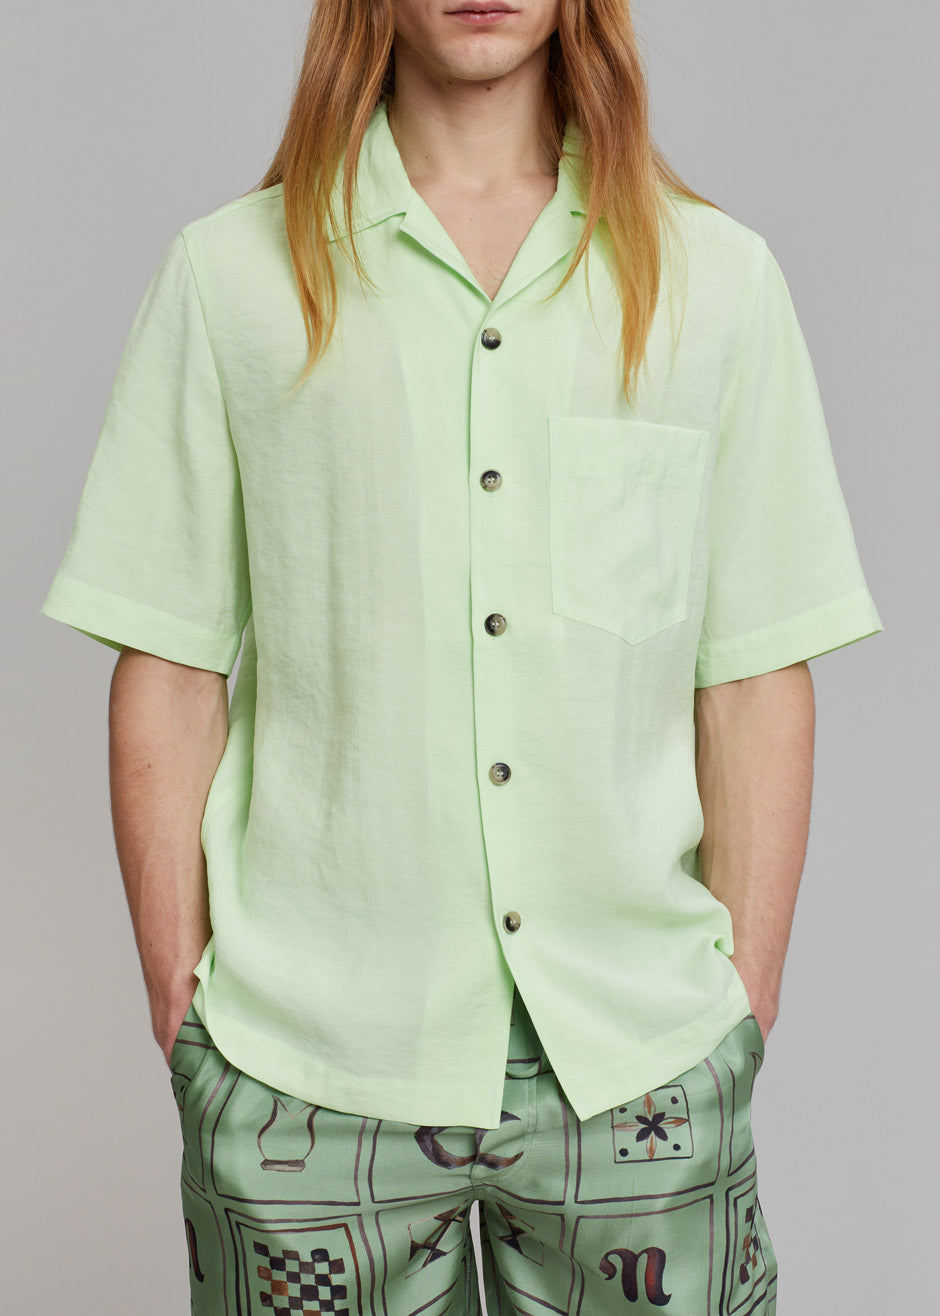 Nanushka Bodil Shirt - Jade - 4